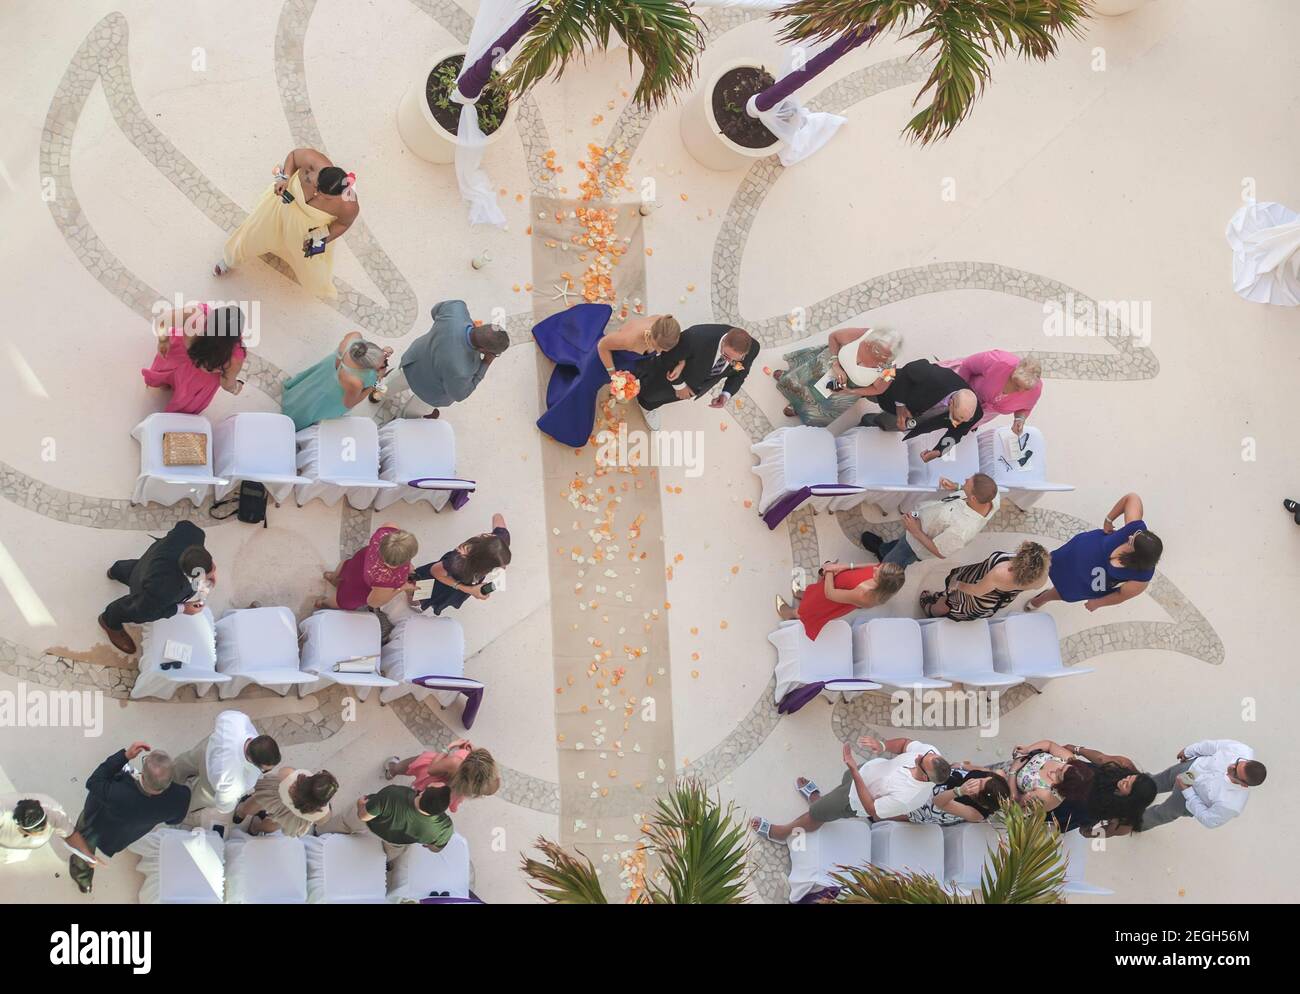 Vista superior de la ceremonia de boda del hotel Caribe Foto de stock